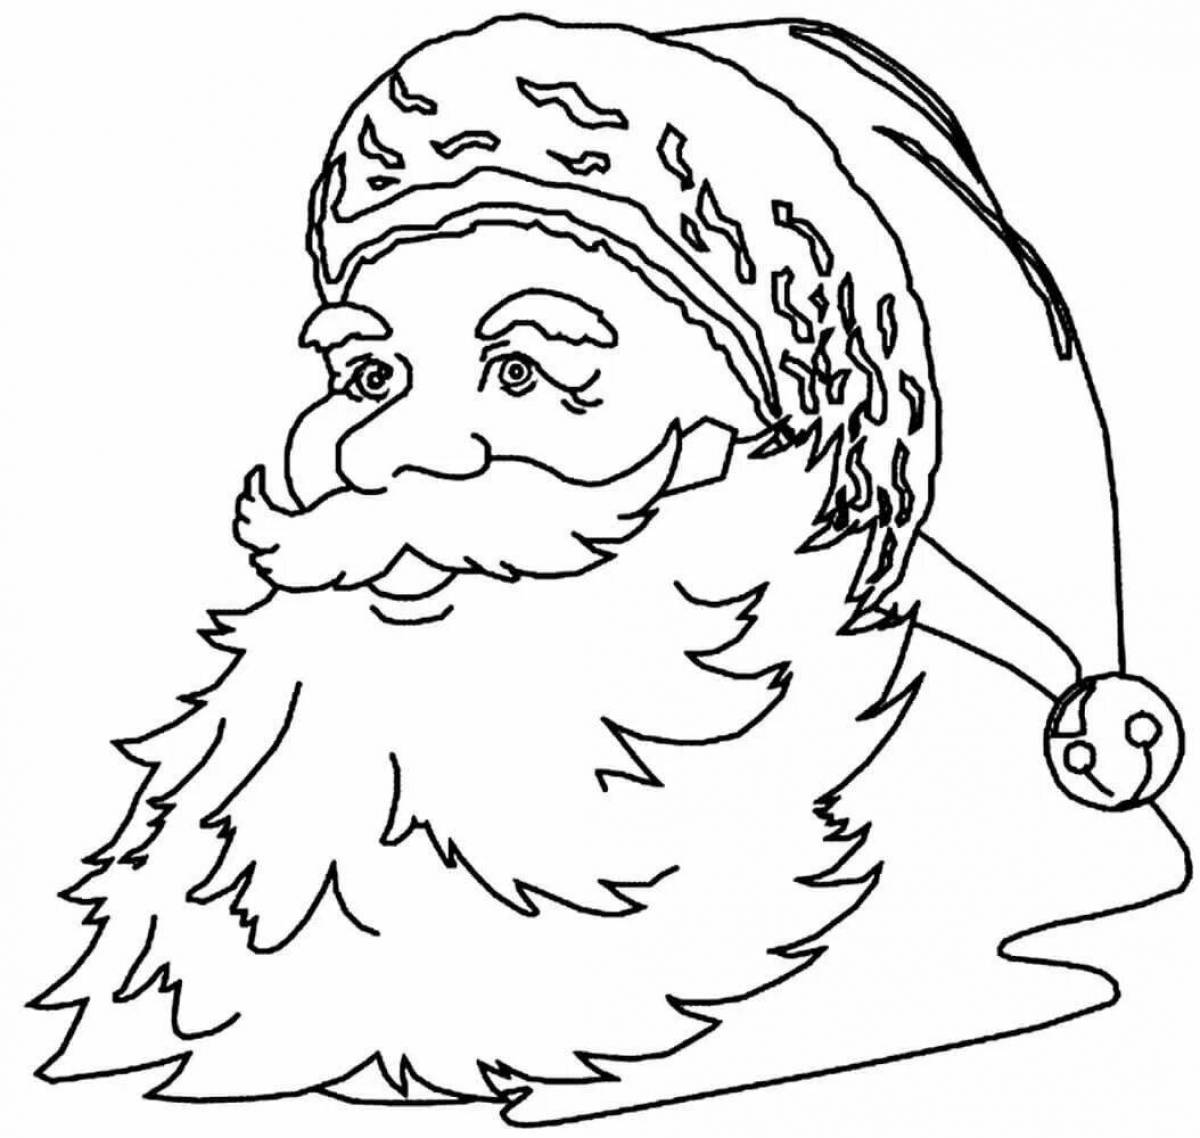 Rampant Santa Claus coloring book